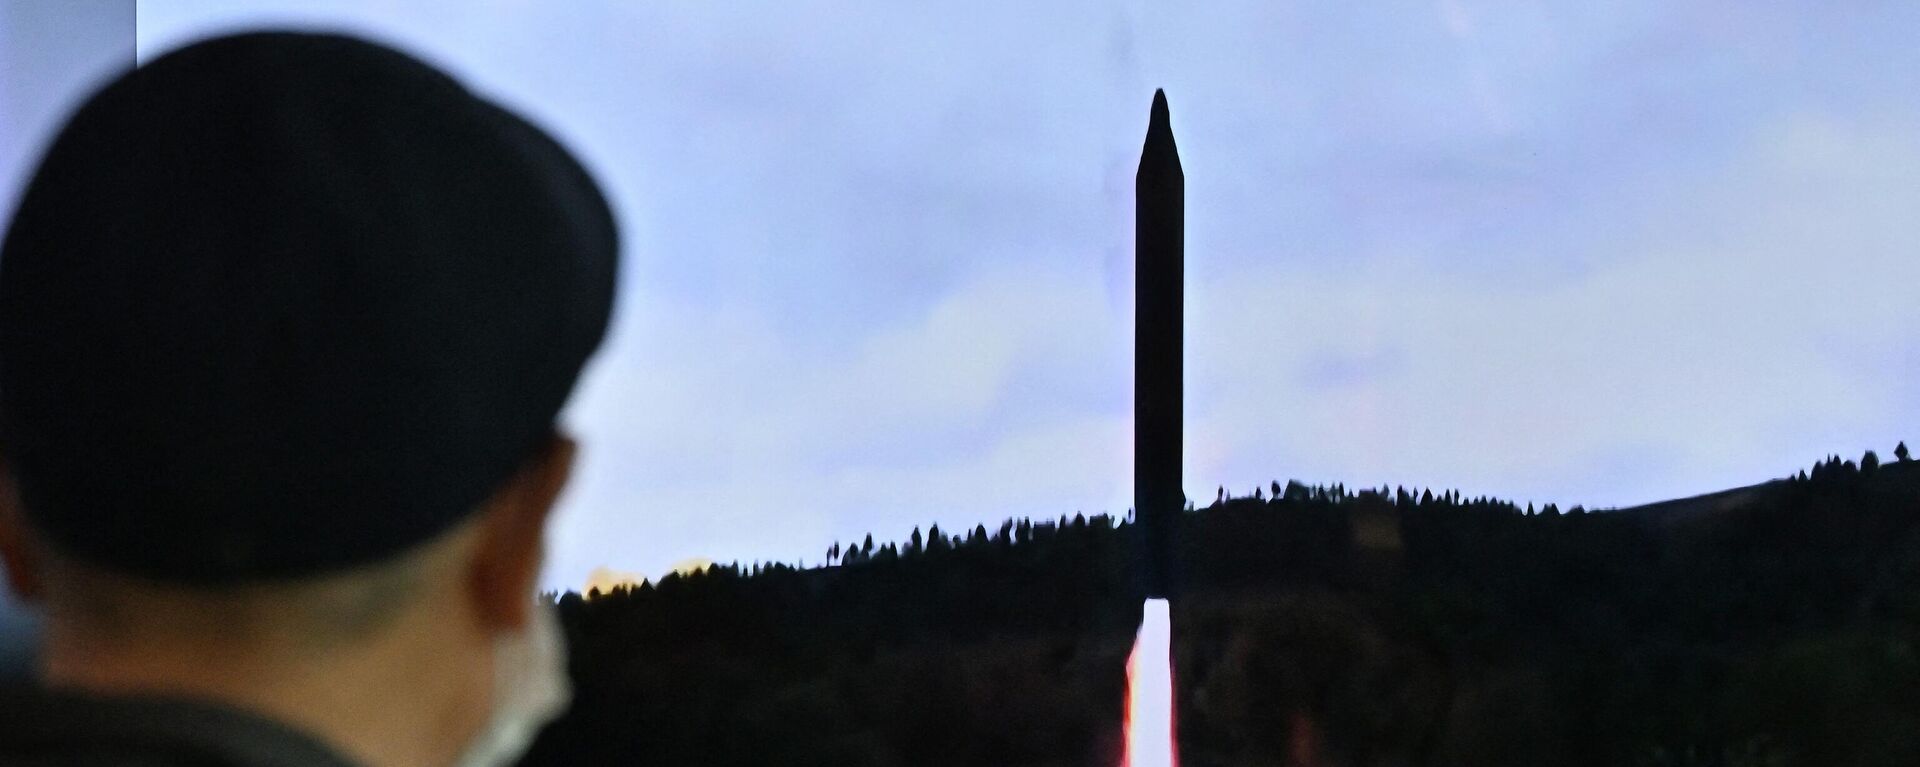 Lanzamiento de misiles por Corea del Norte - Sputnik Mundo, 1920, 18.11.2022